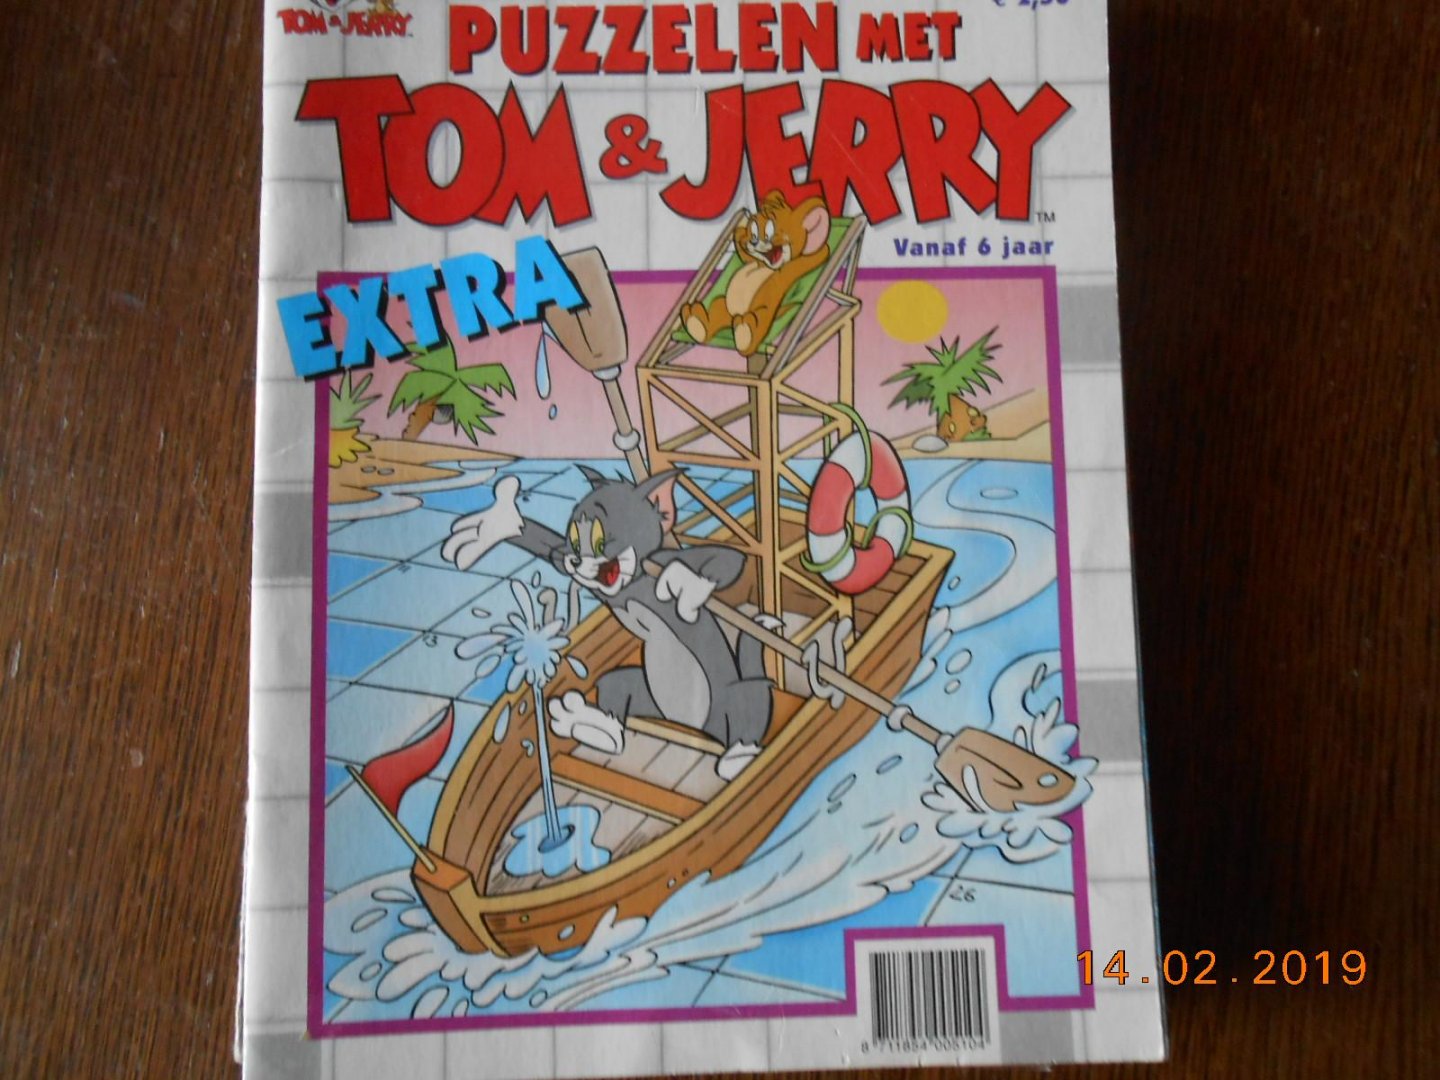  - Puzzelen met Tom en Jerry